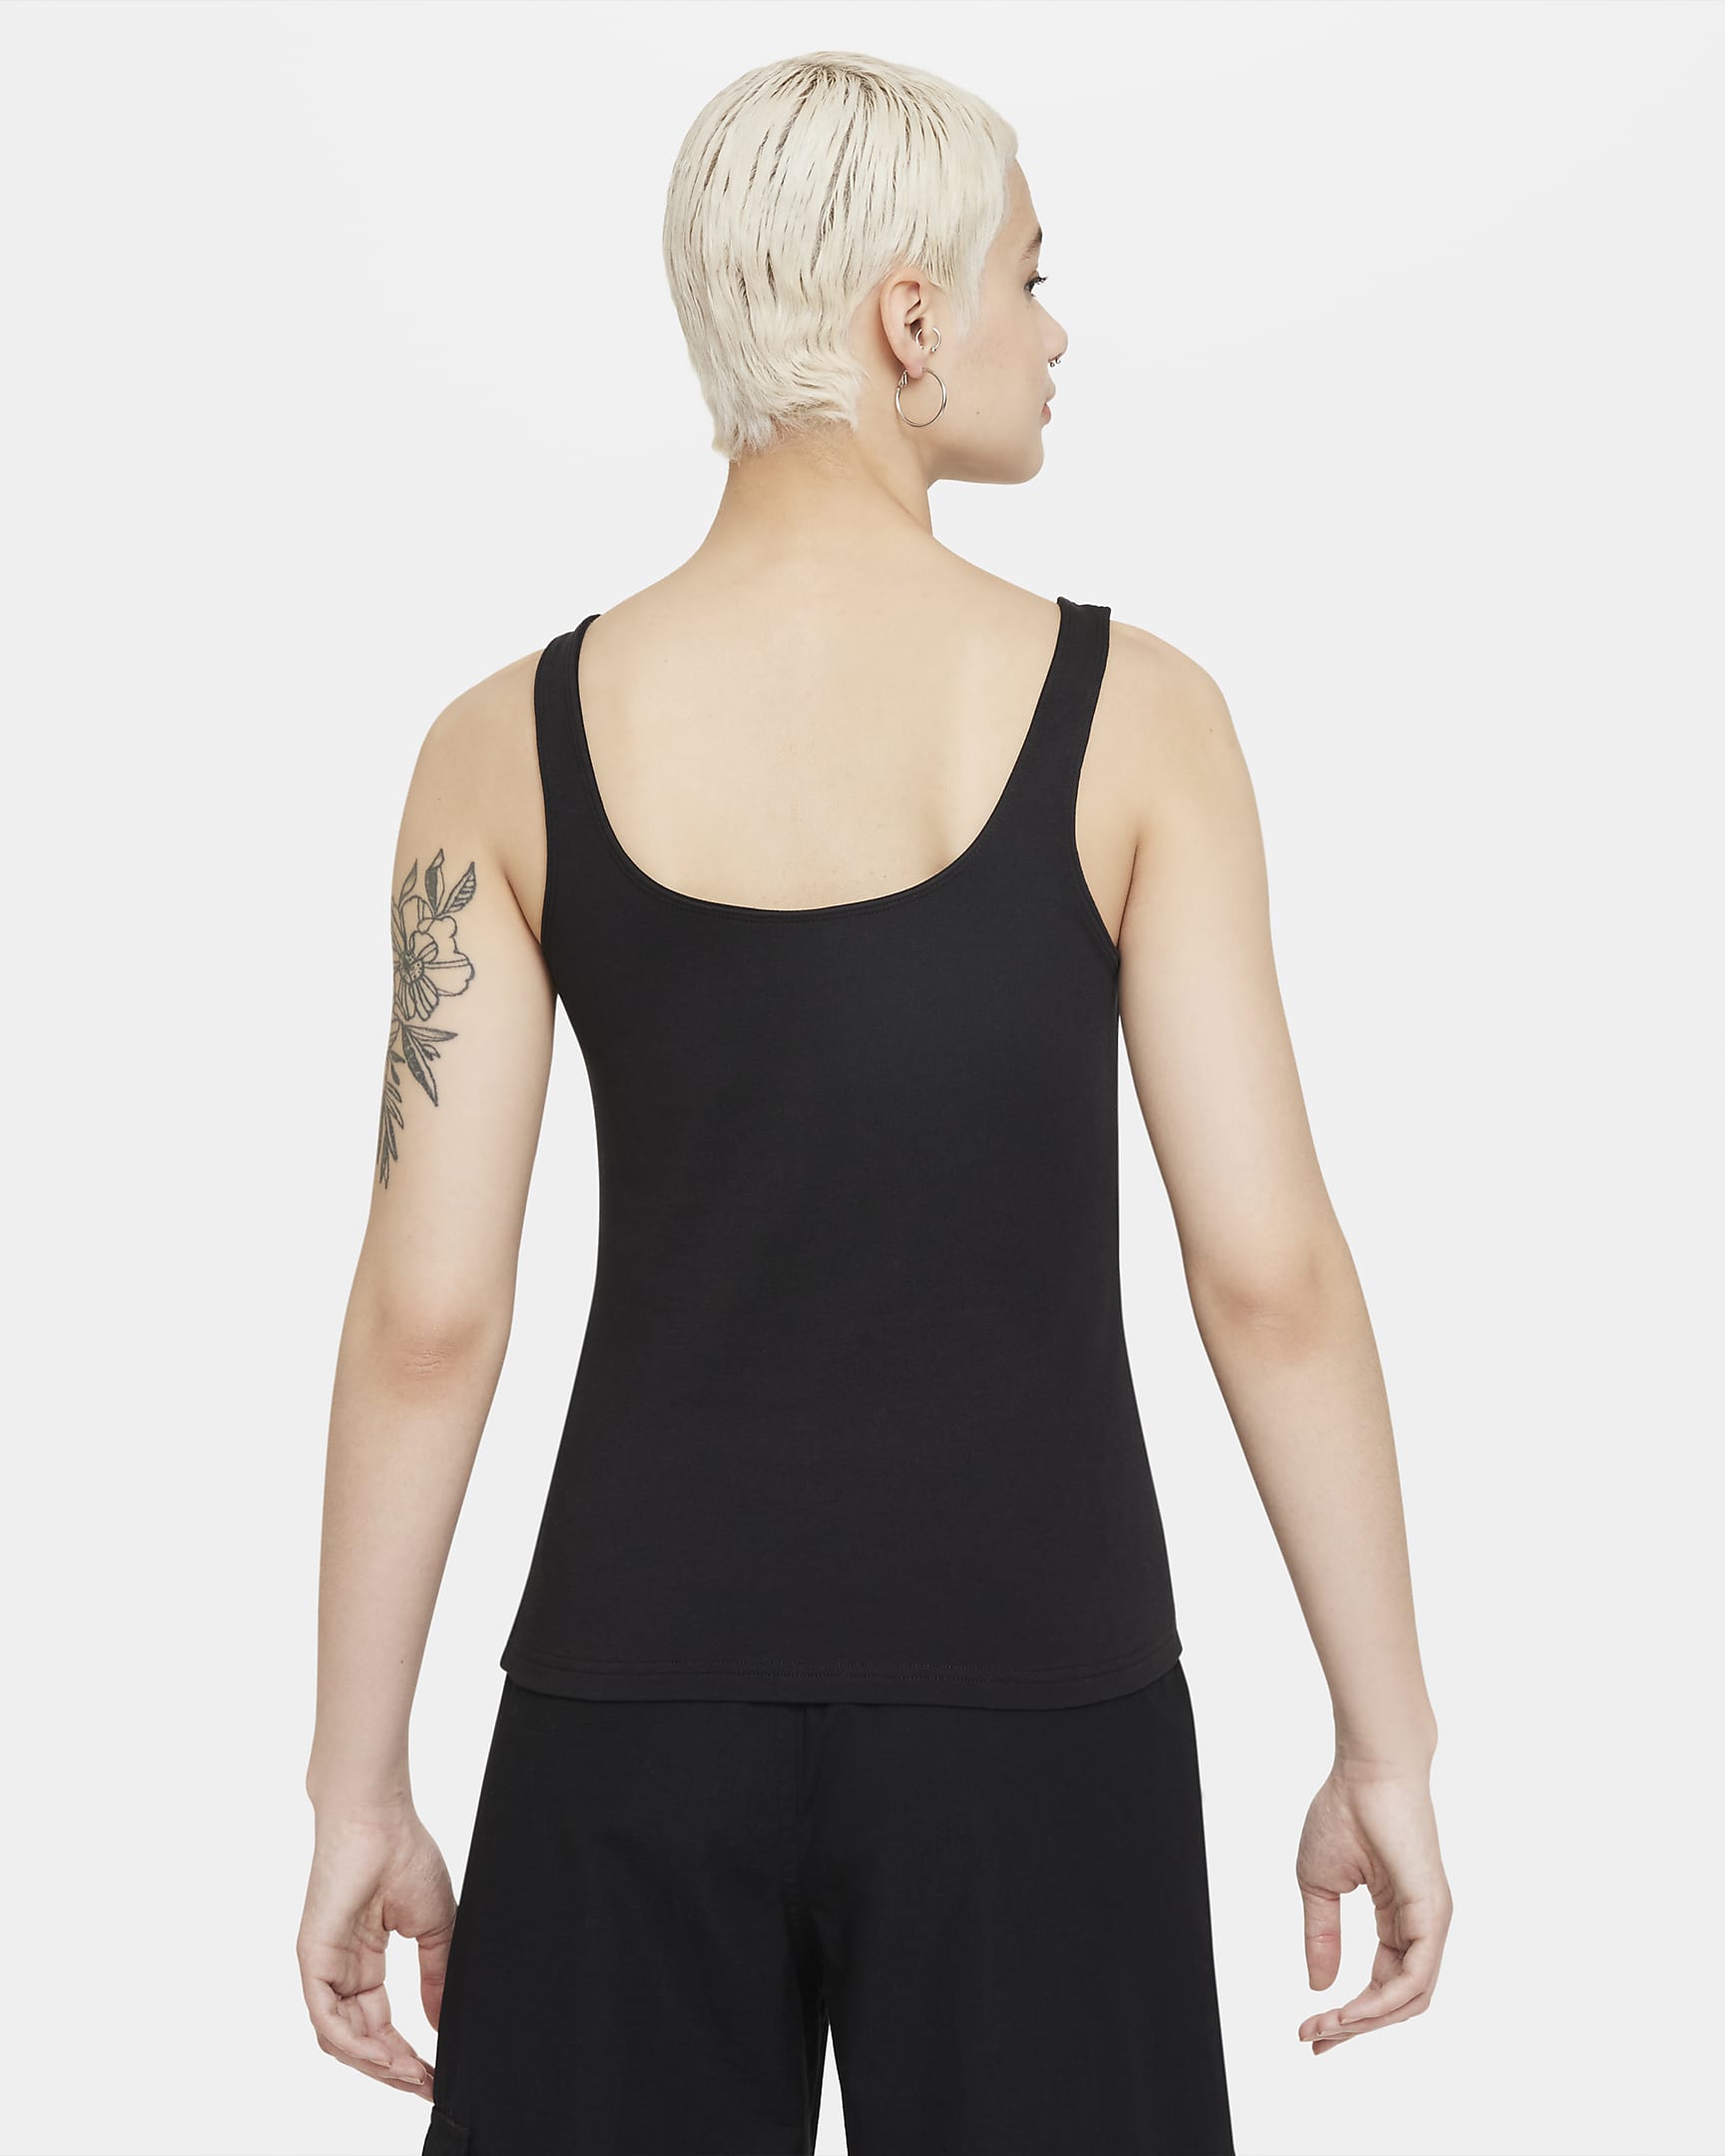 Damska koszulka bez rękawów na cienkich ramiączkach Nike Sportswear Essential - Czerń/Biel